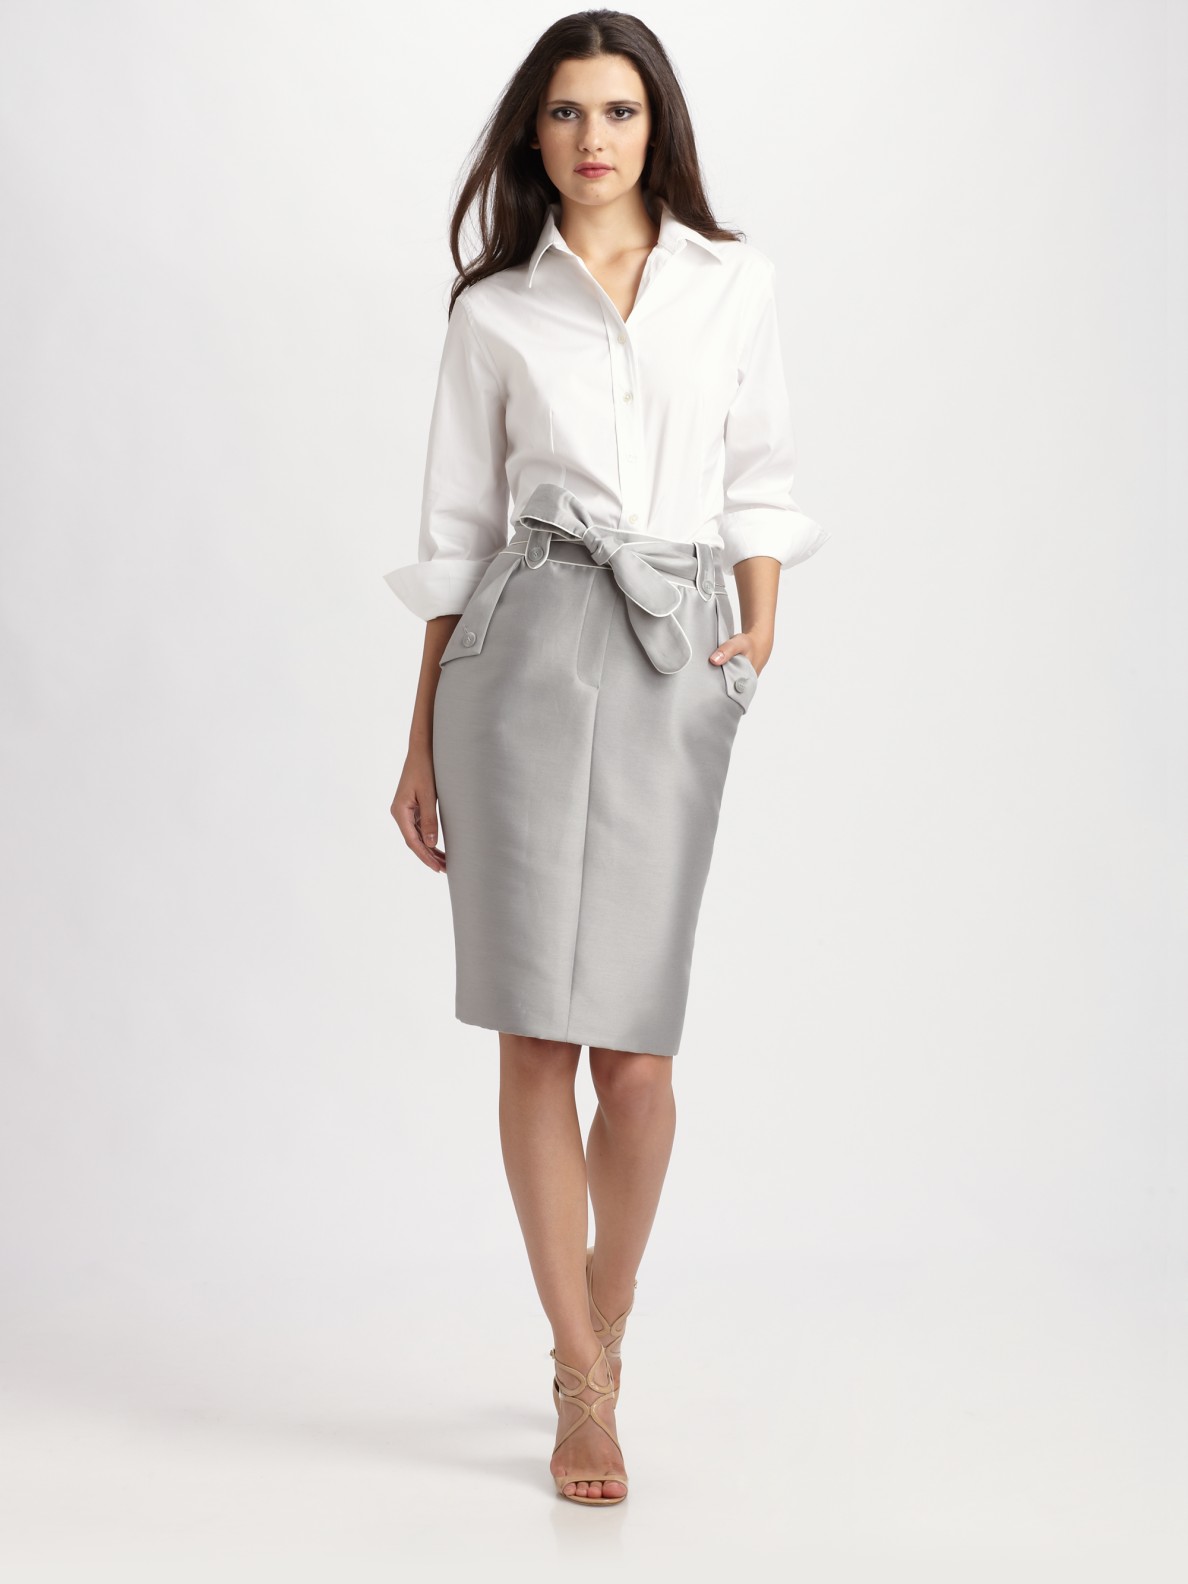 Lyst - Carolina Herrera Mikado Skirt in Gray